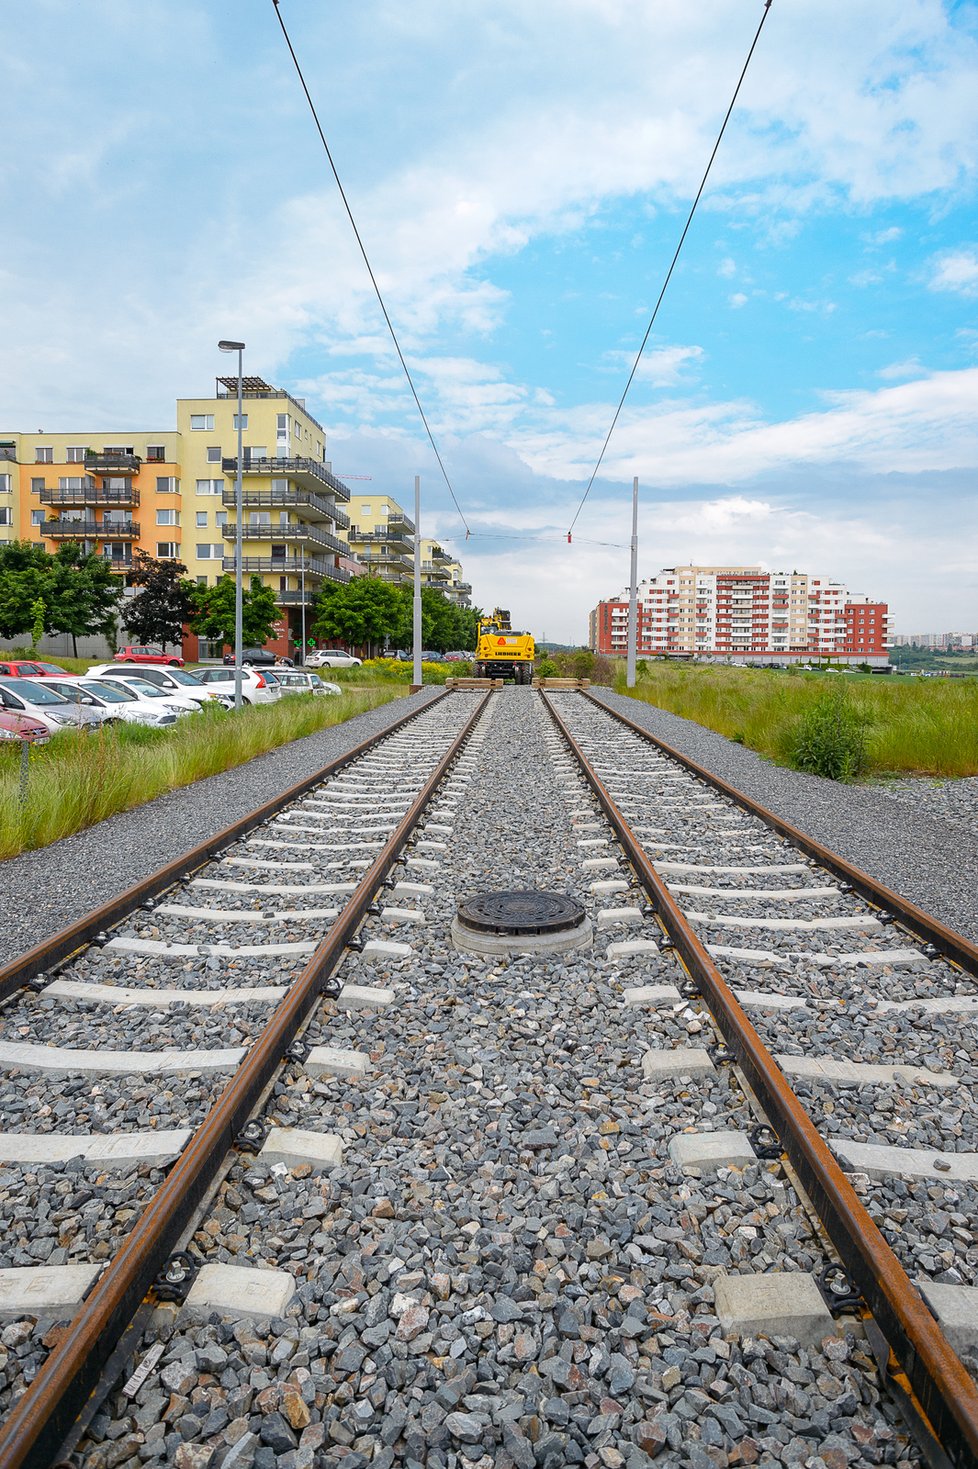 Dopravní podnik za účasti zástupců magistrátu i dotčených městských čtvrtí zahájili stavbu tramvajové trati z Barrandova do Slivence